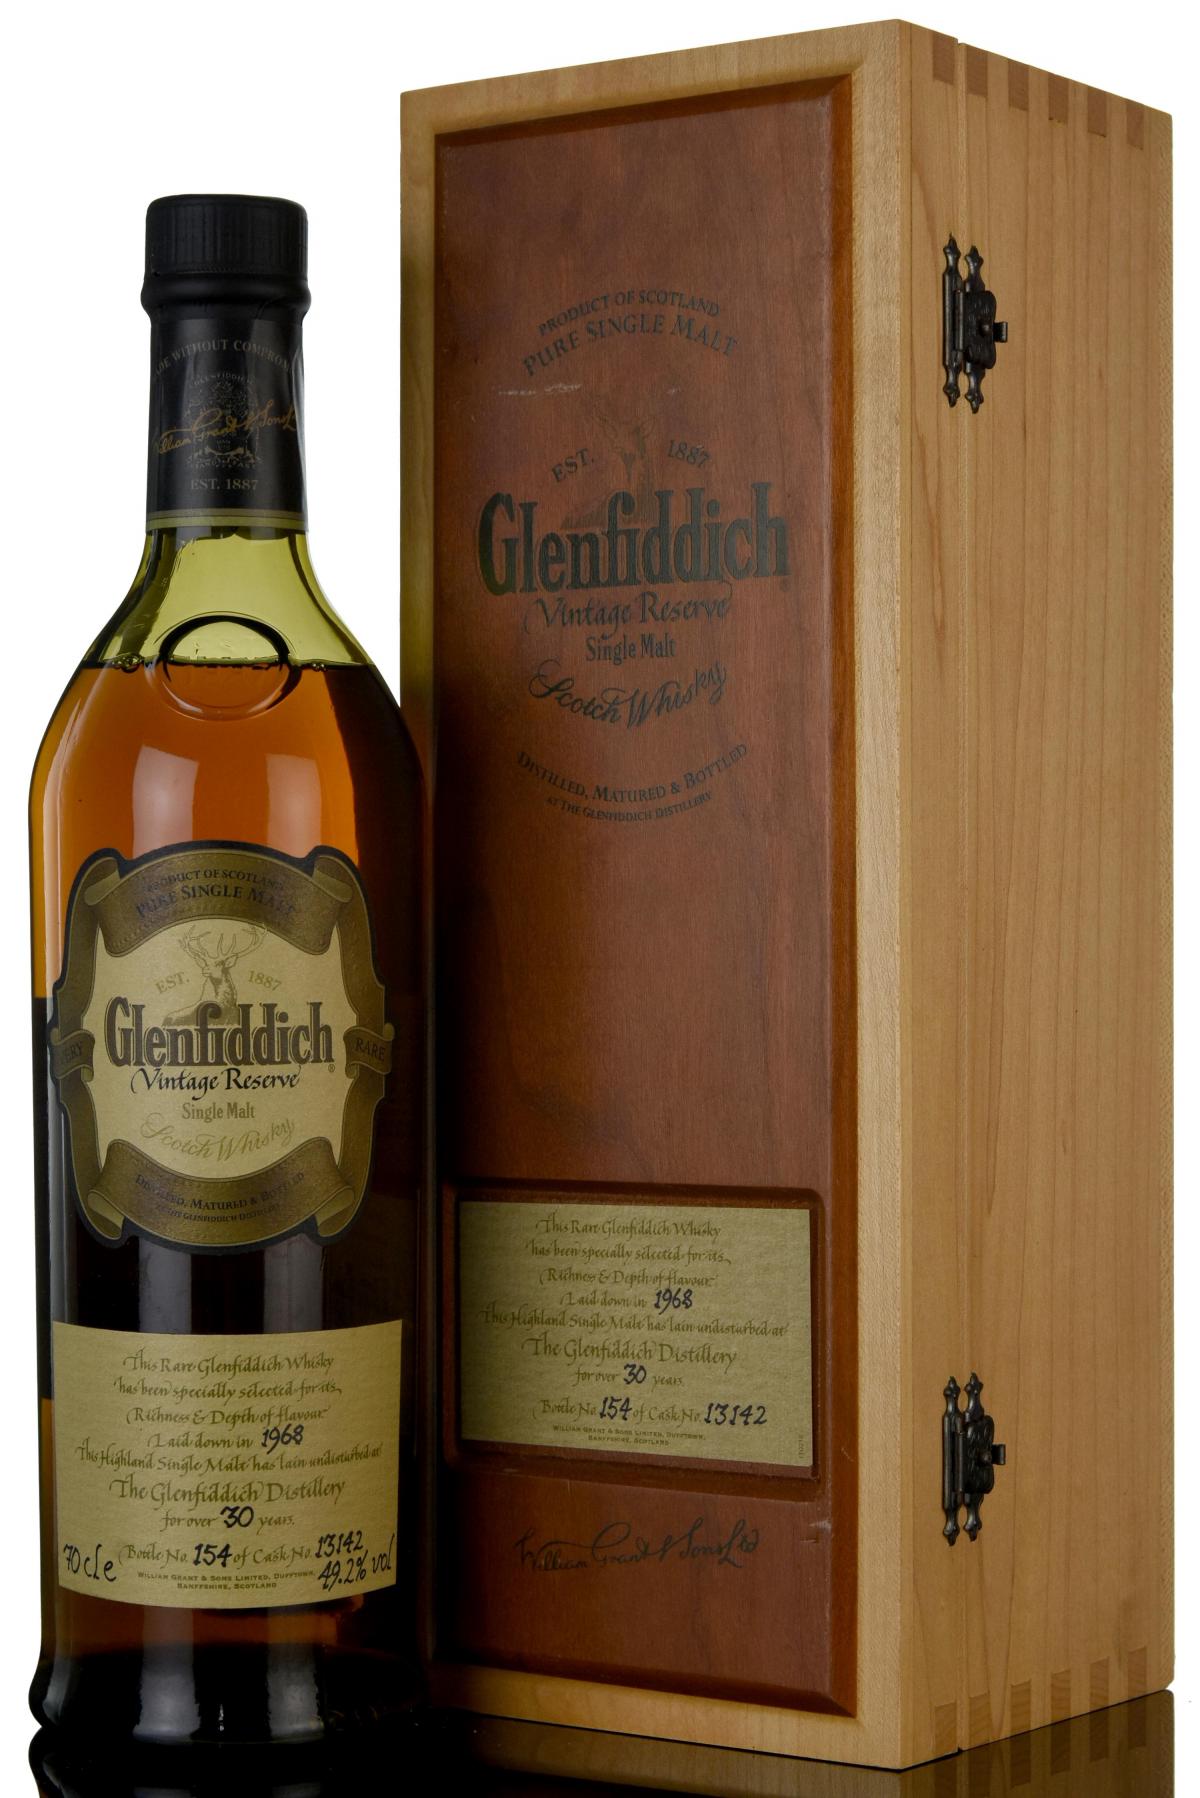 Glenfiddich 1968 - 30 Year Old - Vintage Reserve - Single Cask 13142